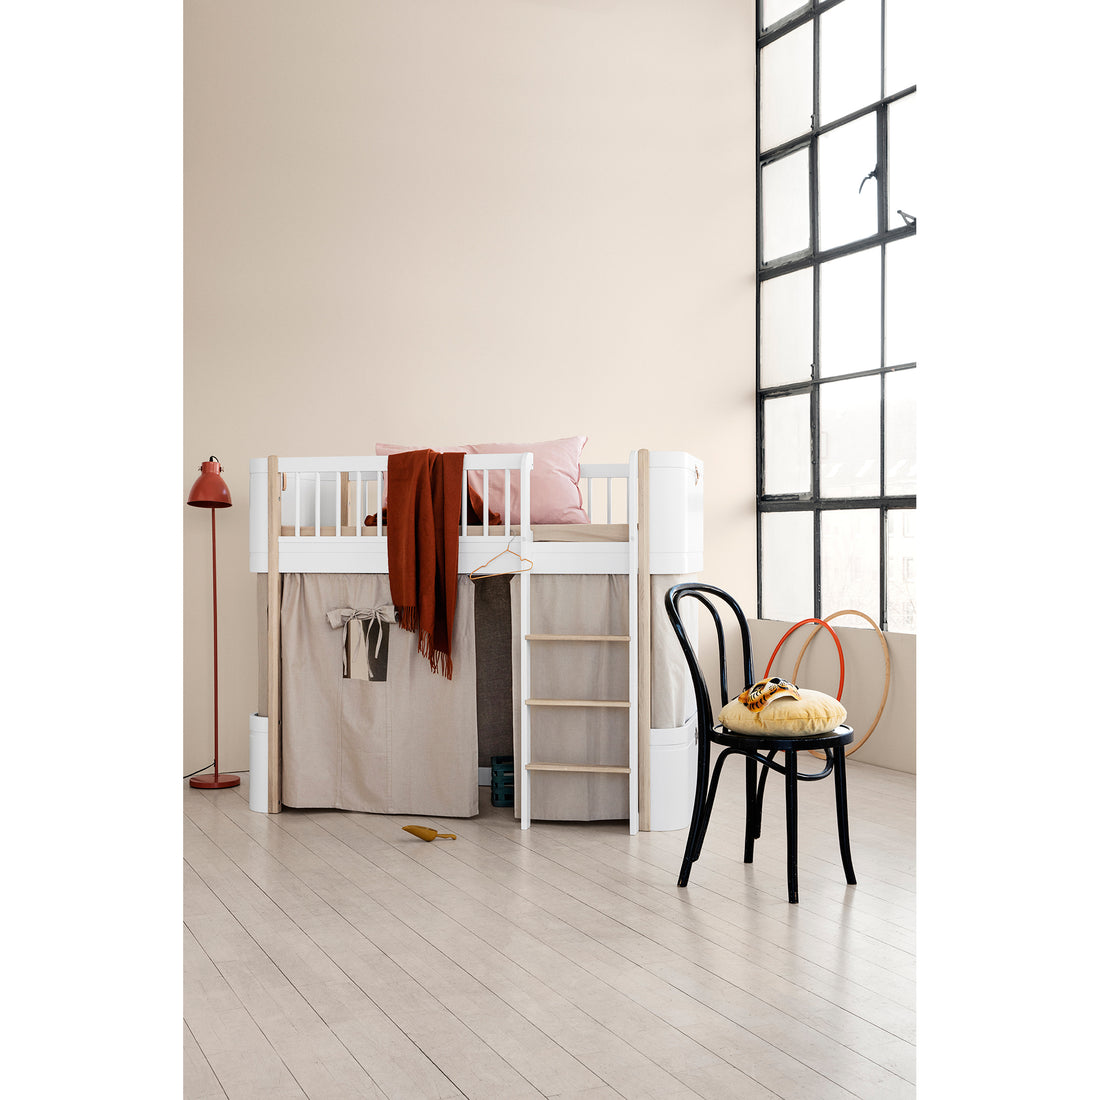 Oliver Furniture Wood Cold Form 床褥 適合Wood Mini+ 矮身高架床 68 x 162 x 12cm